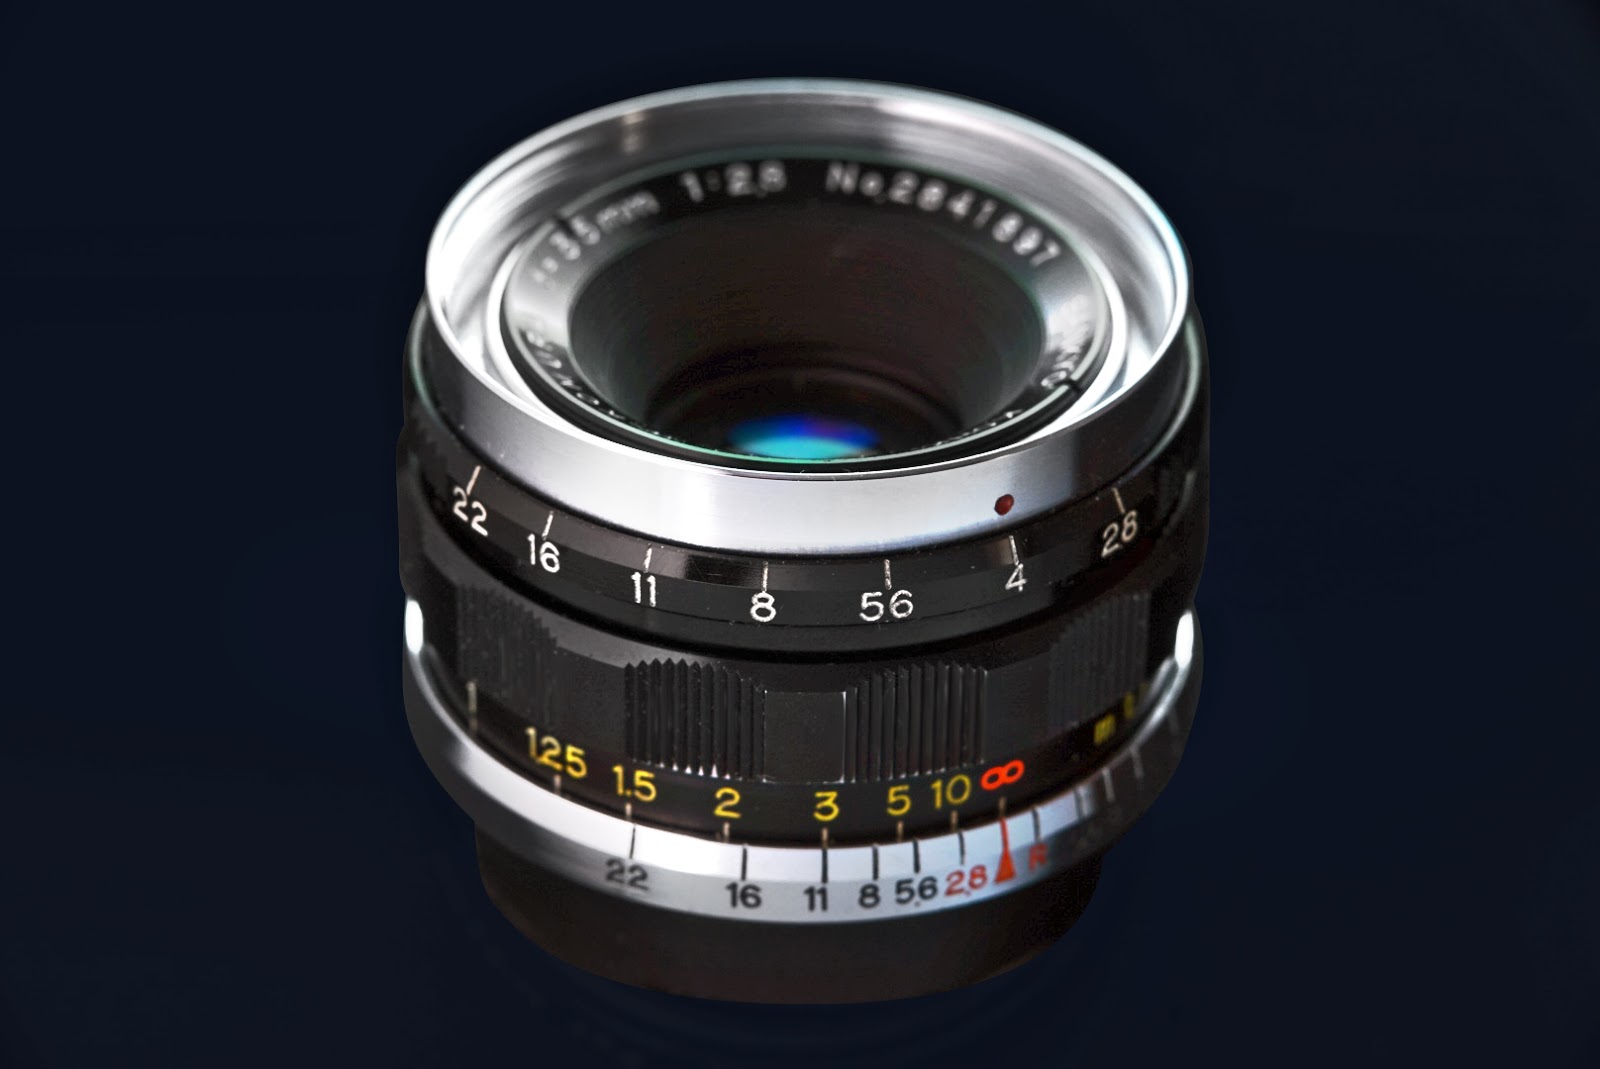 多数販売  f2.5作例付 35mm W-KOMURA +三協光機 AE-1美品 Canon フィルムカメラ